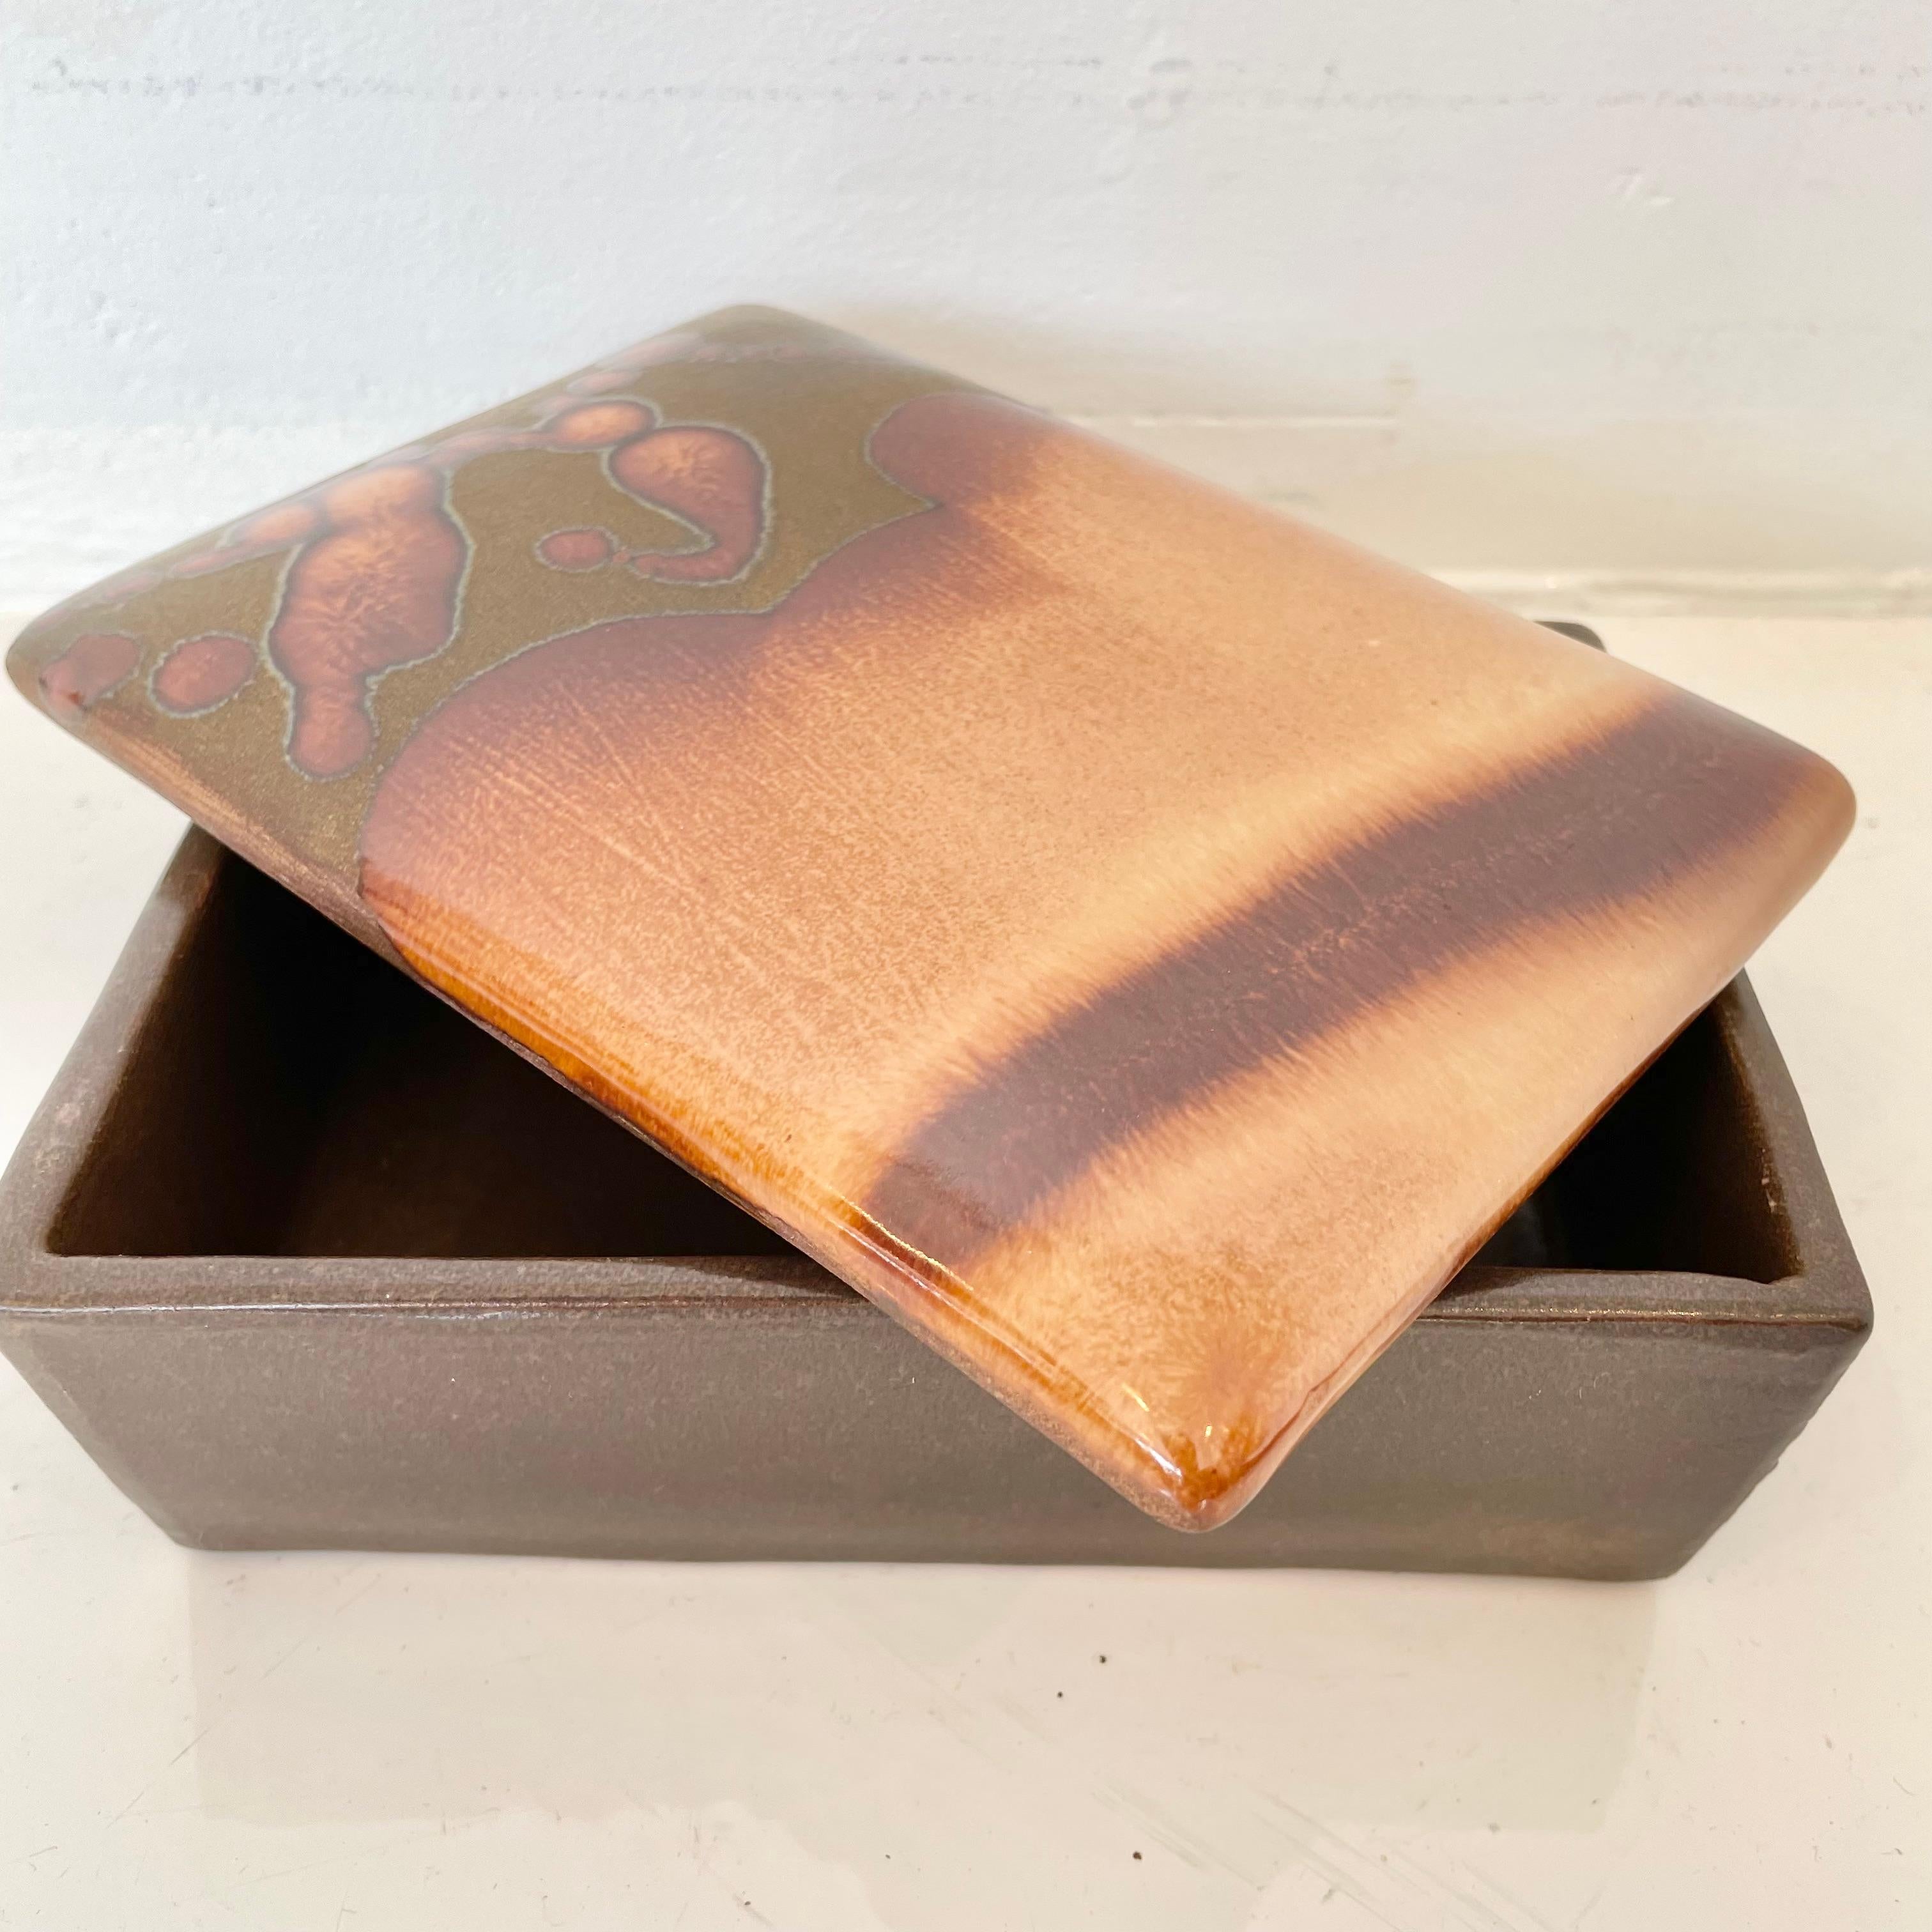 Keramikdose mit Tropfglasur, hergestellt in Italien, ca. 1970er Jahre. Die körnige Oberfläche mit Hochglanzakzenten in einem schönen Schokoladenbraun und Hellbraun verleiht ihm eine große Tiefe. Toller Vintage-Zustand. Lustige Aufbewahrungsbox und